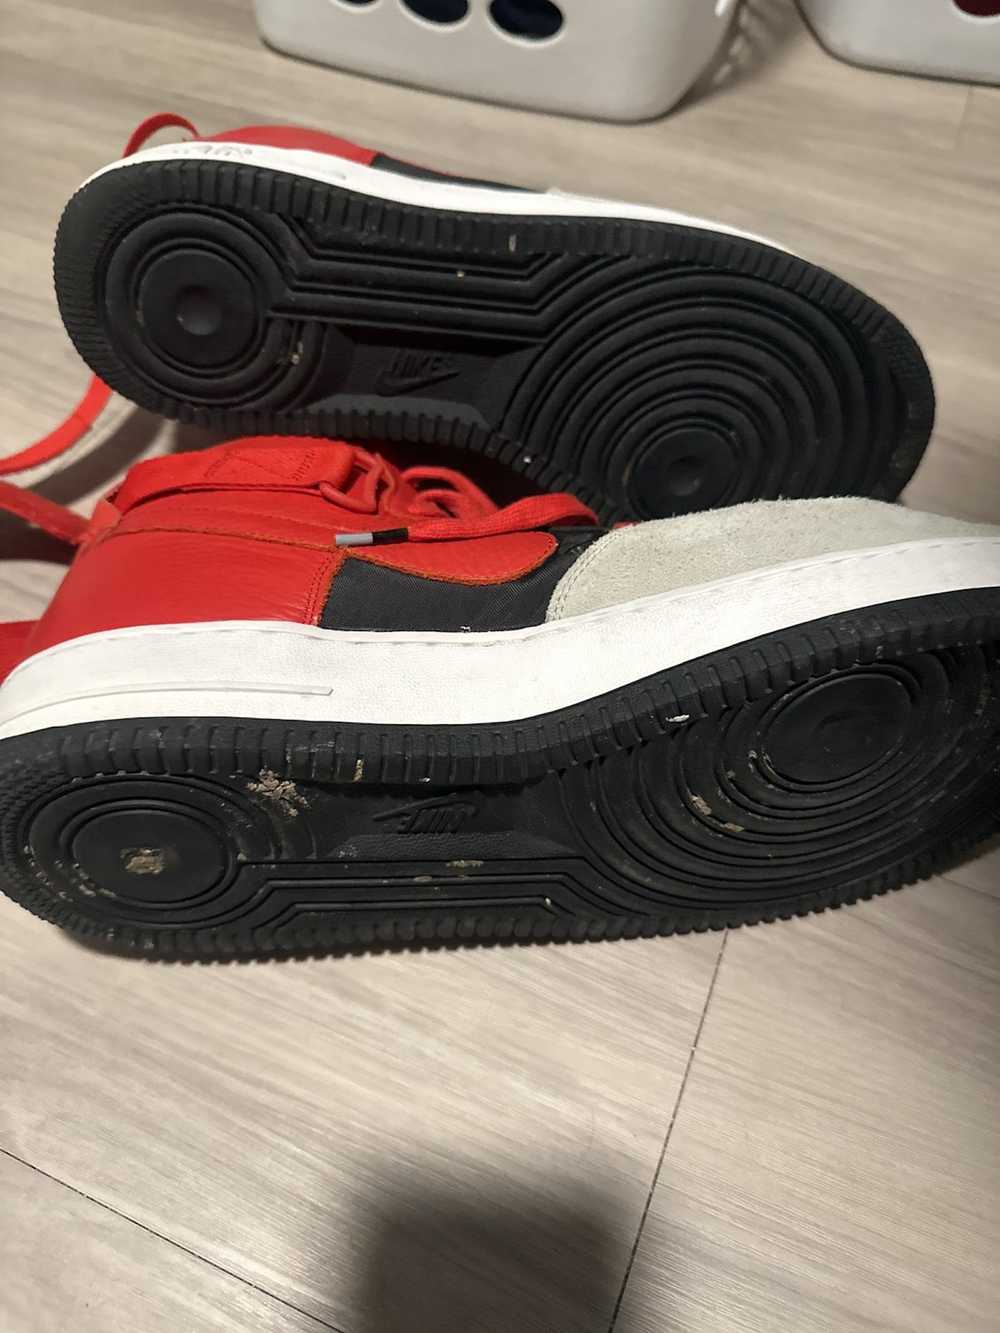 Nike Nike AirForce 1 Hi Top Black Red White - image 5